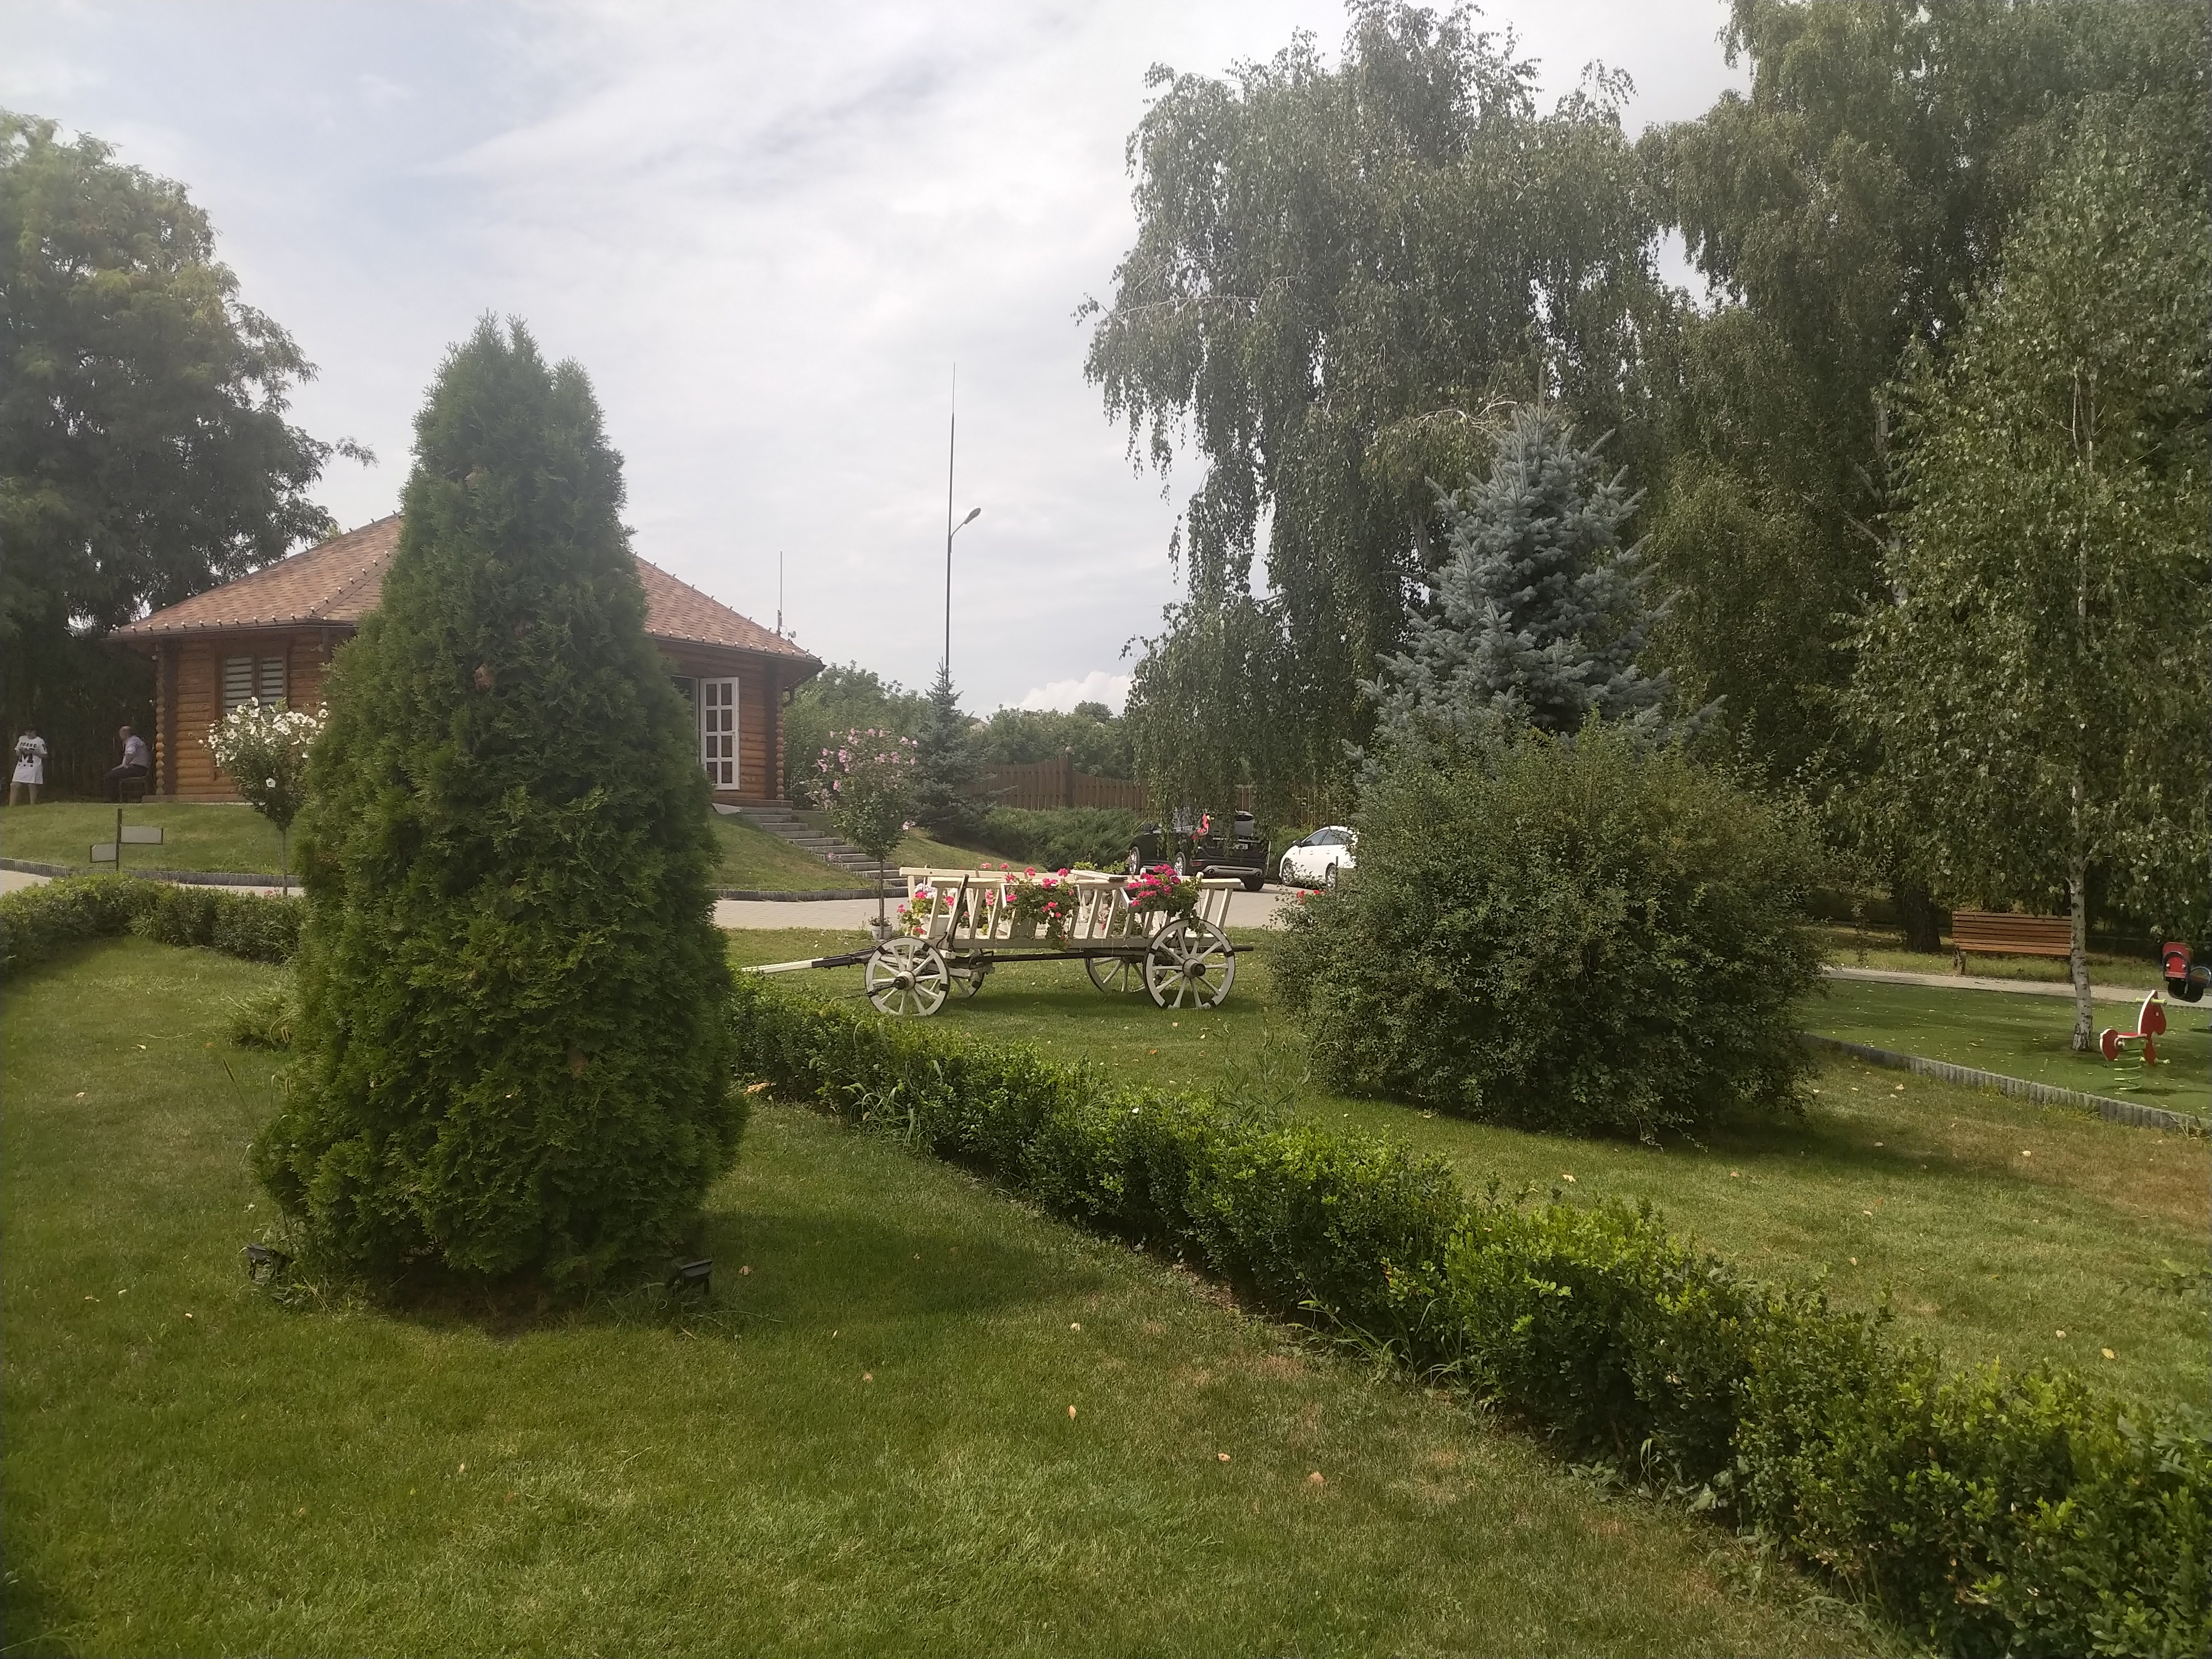 MD, District Criuleni, Satul Magdacesti, Căruță decorativă la International Park